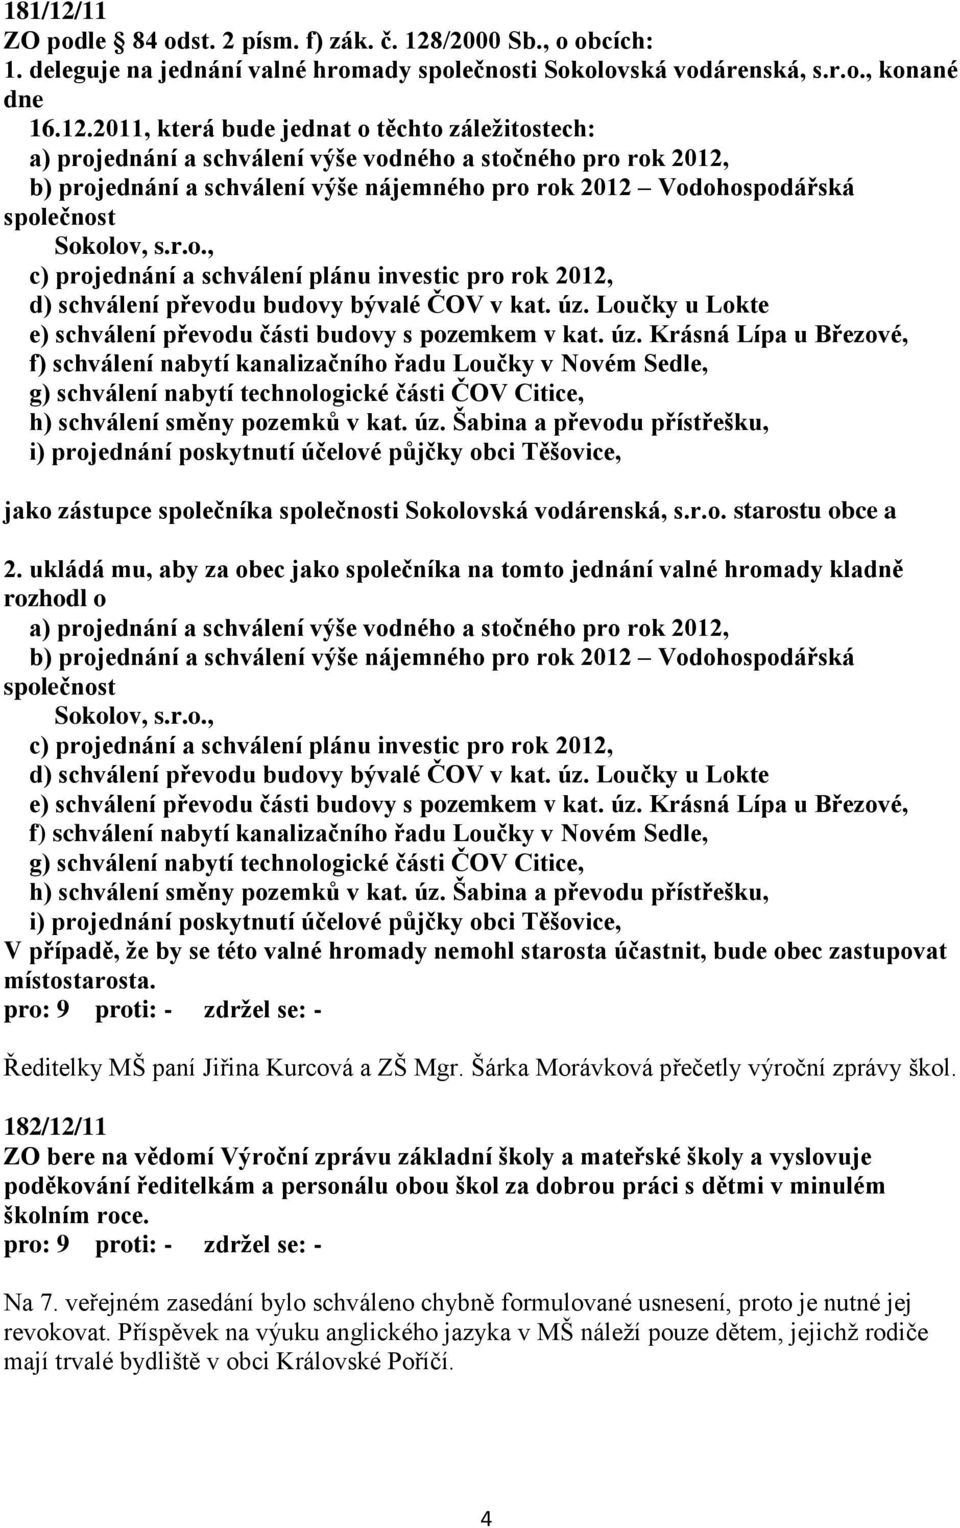 /2000 Sb., o obcích: 1. deleguje na jednání valné hromady společnosti Sokolovská vodárenská, s.r.o., konané dne 16.12.